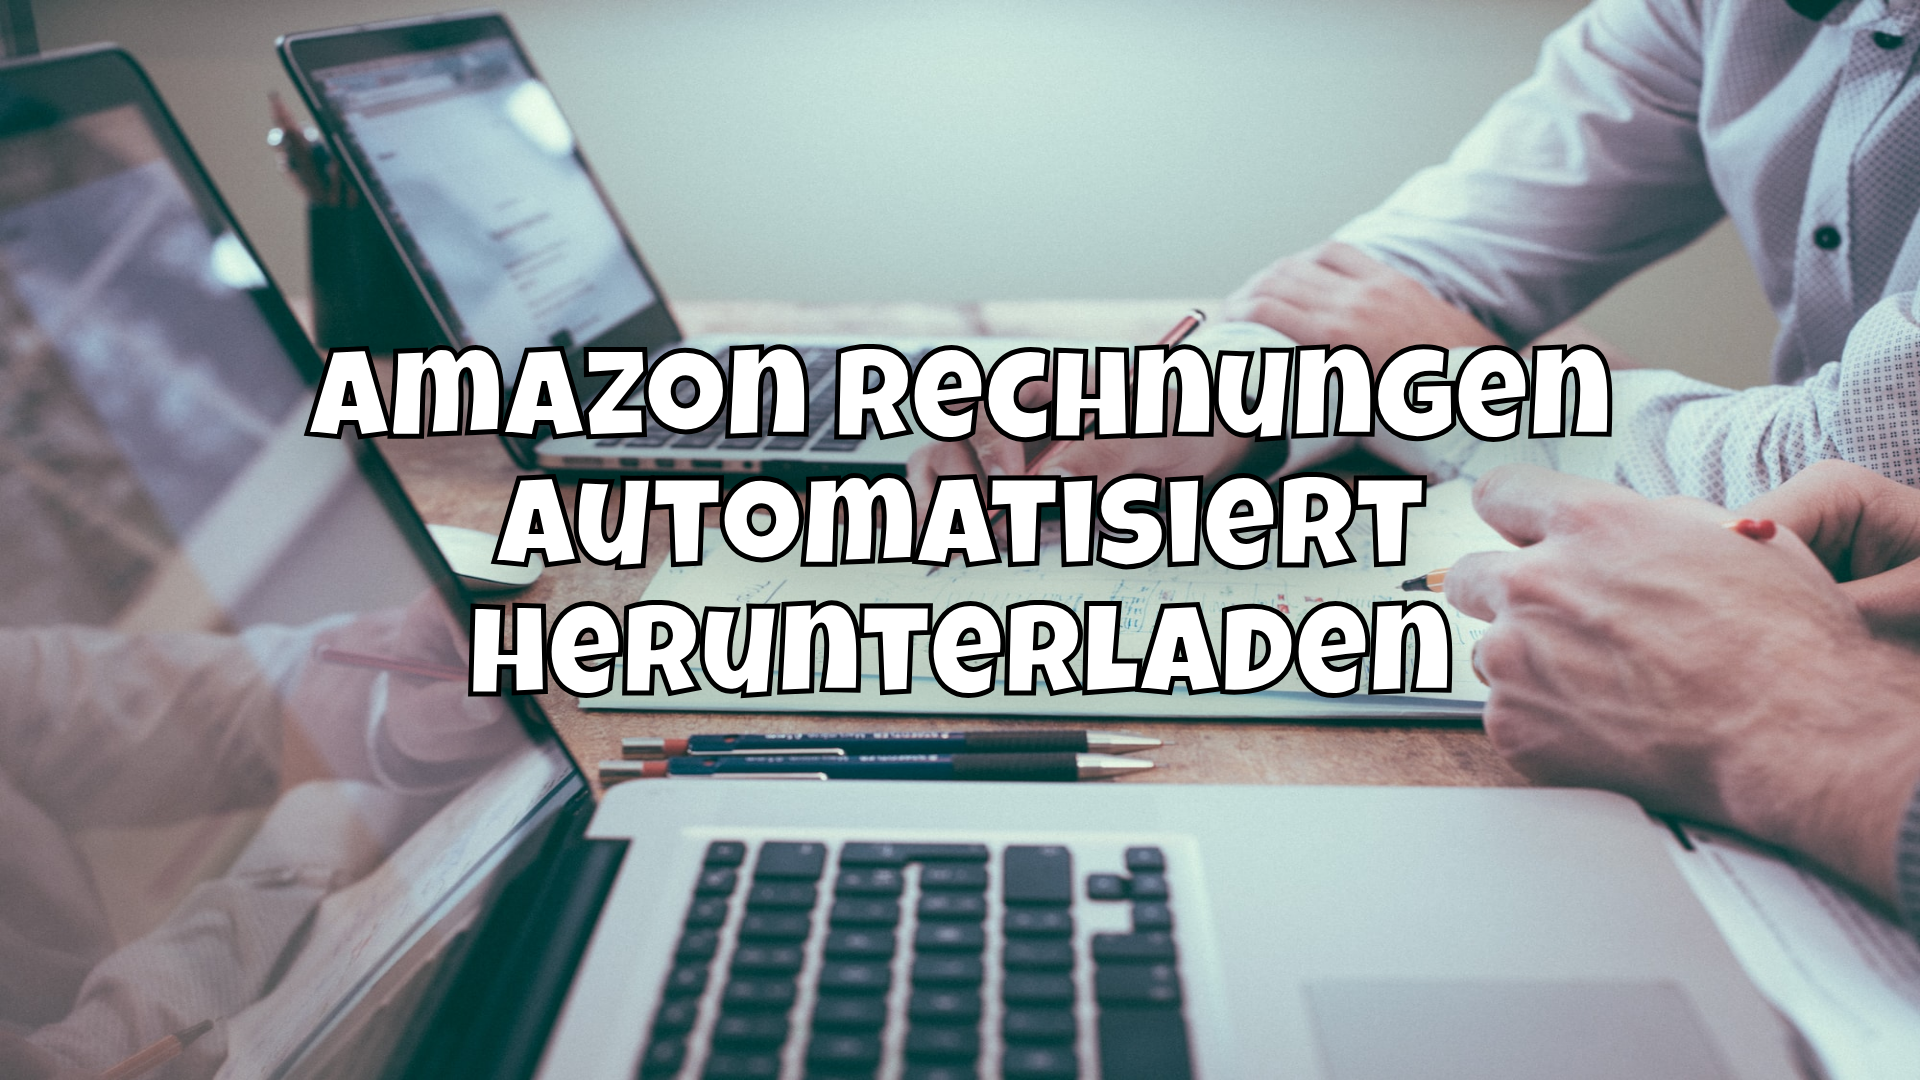 Amazon Rechnungen automatisiert herunterladen